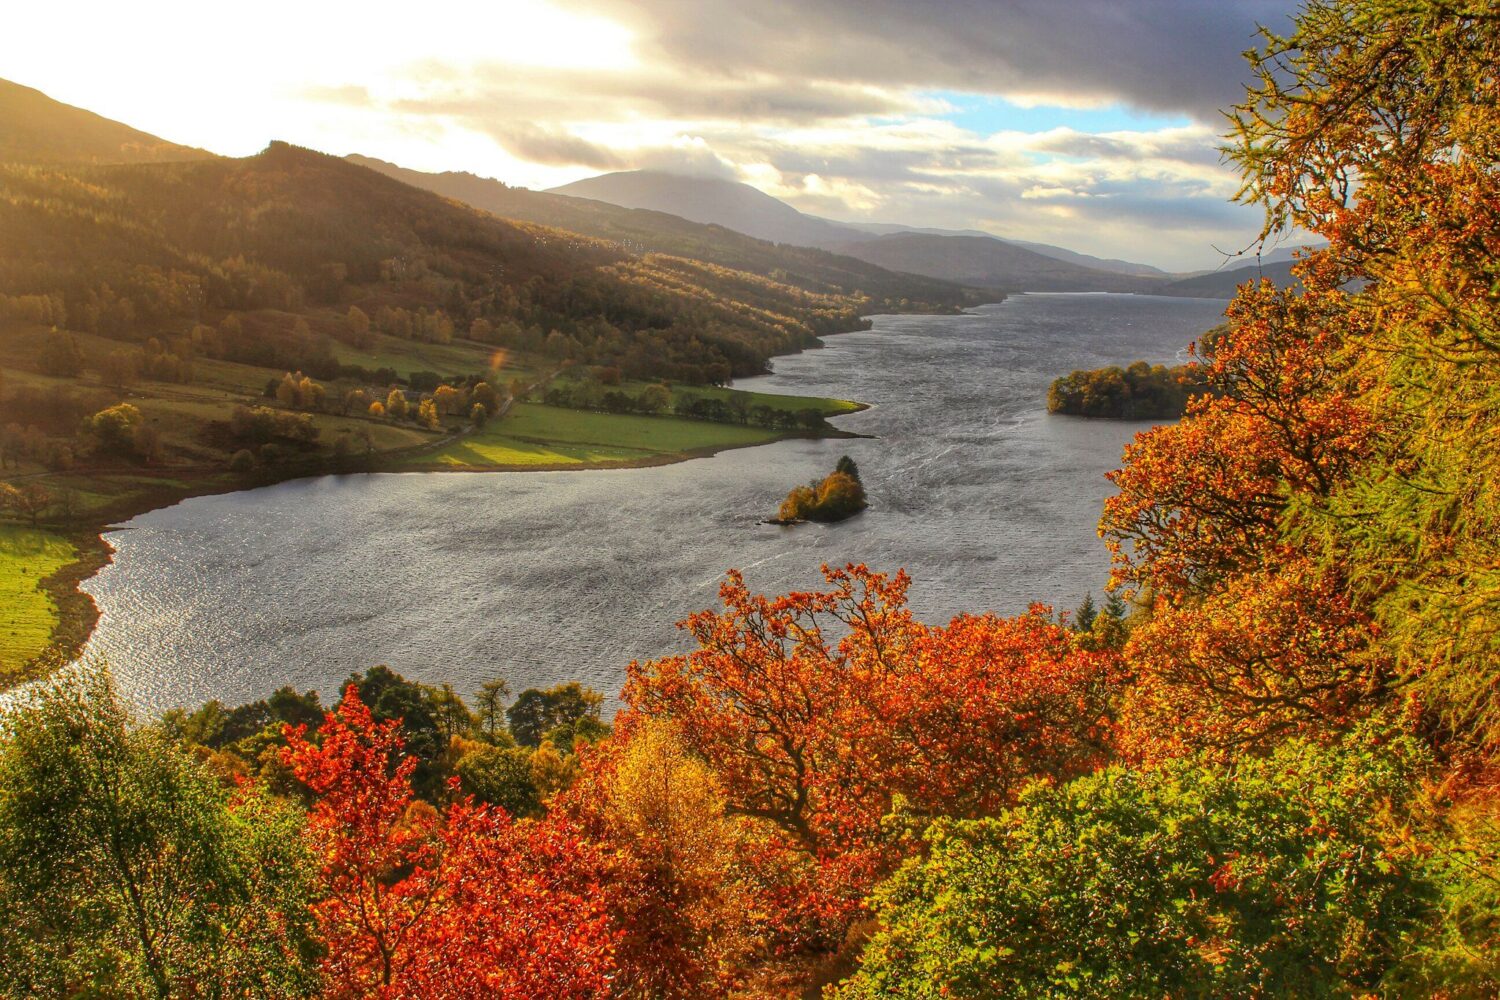 Autumn views in Perthshire, Scotland